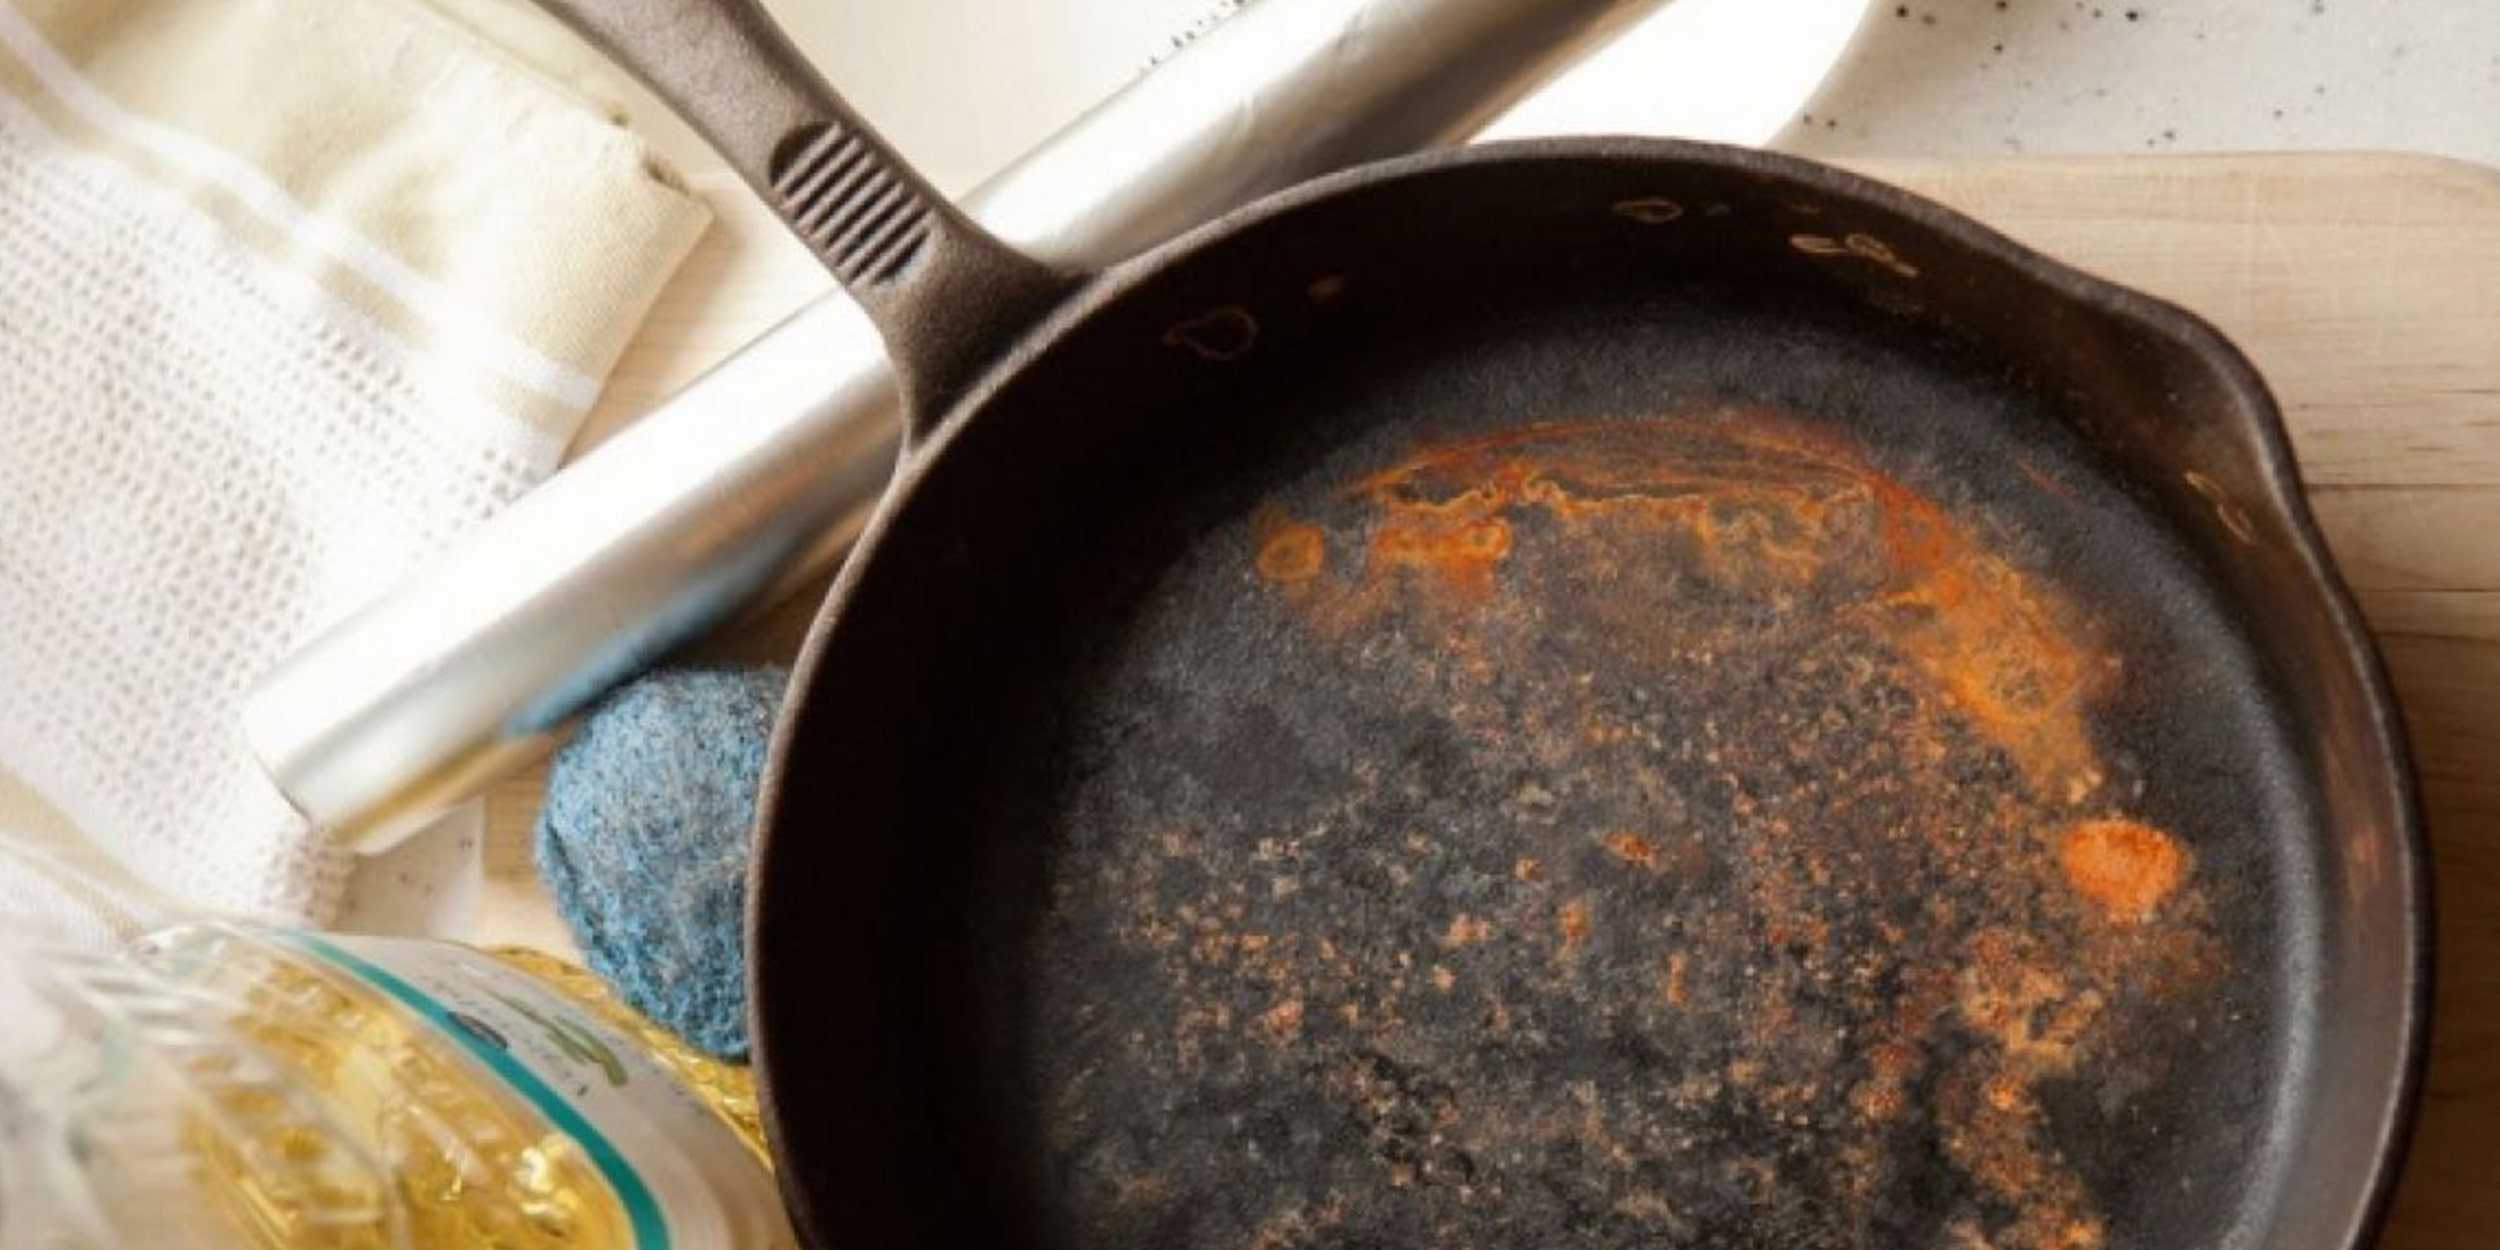 Чугунная сковорода: очистить от многолетнего нагара и ржавчины